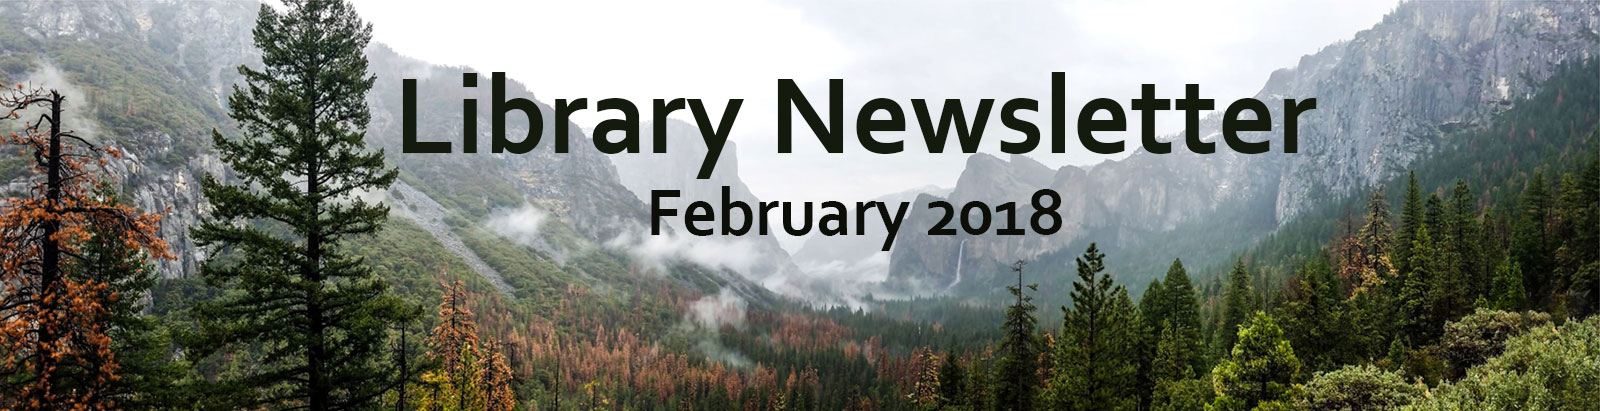 Library Newsletter - February 2018